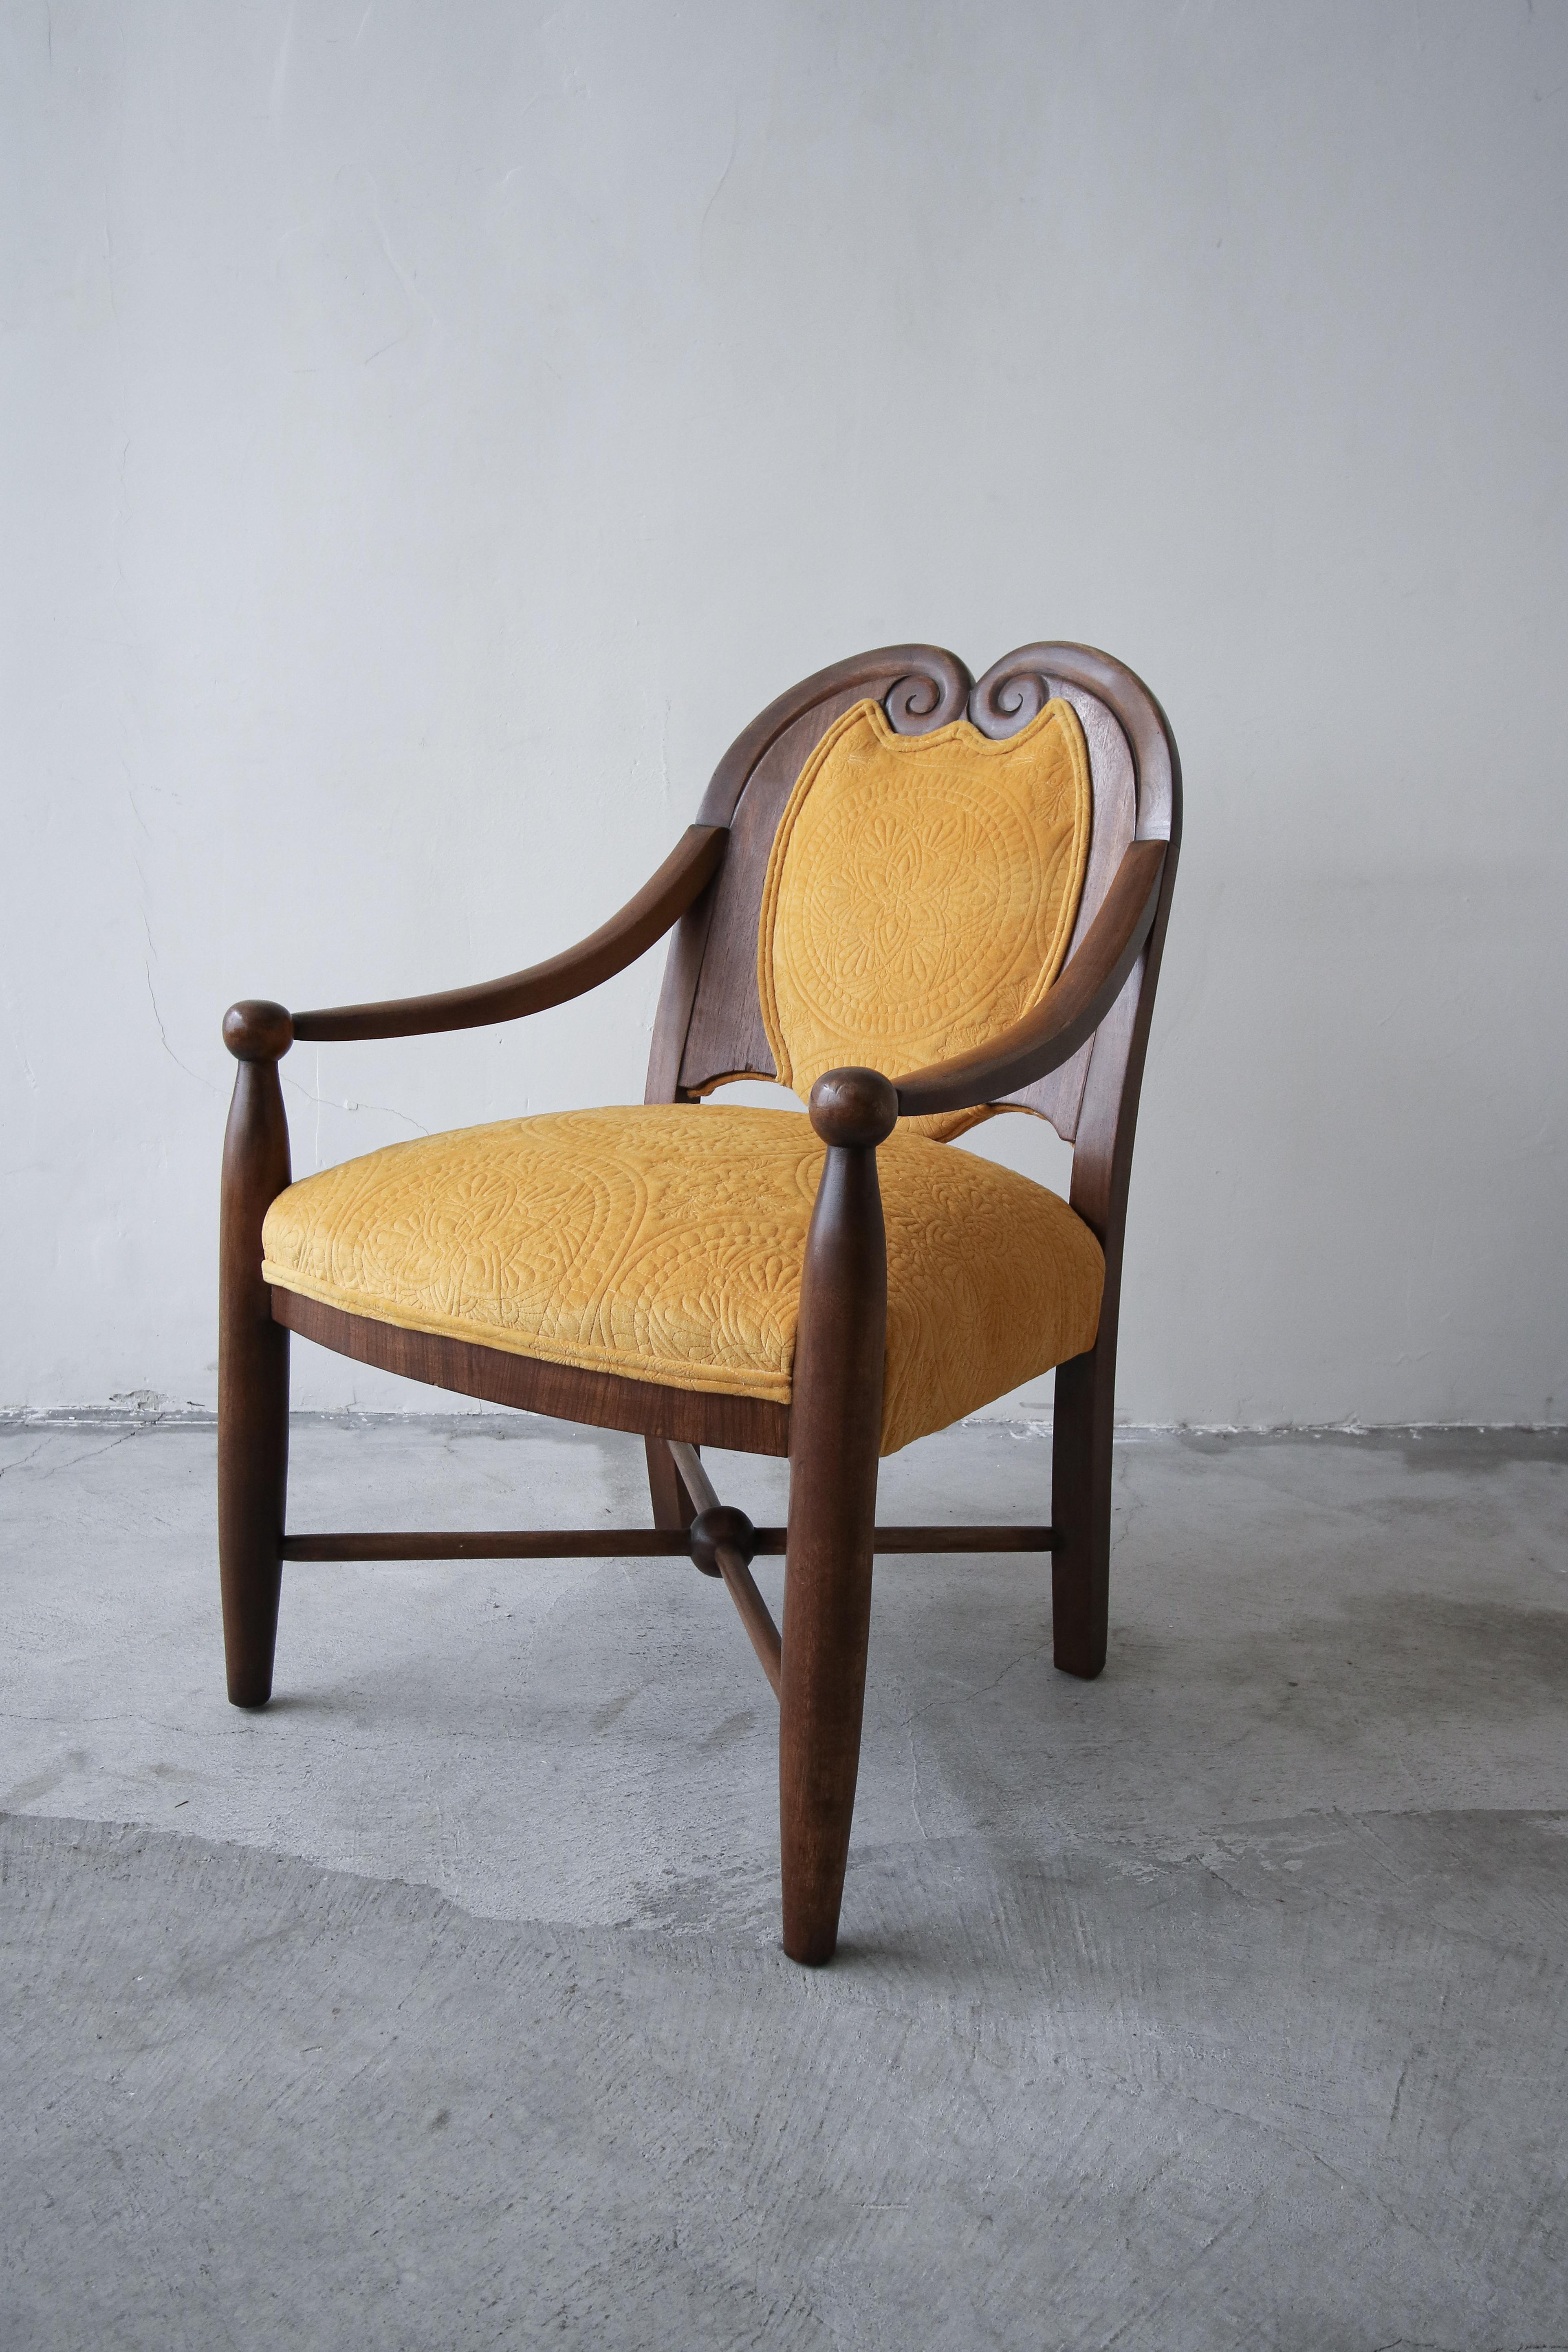 Wenn Sie auf der Suche nach dem perfekten antiken Beistellstuhl im traditionellen Stil sind, sind Sie hier genau richtig. Dieser Stuhl und all seine geschnitzten Holzdetails sind erstaunlich. Ich weiß nicht, ob ich je einen schöneren Stuhl in diesem